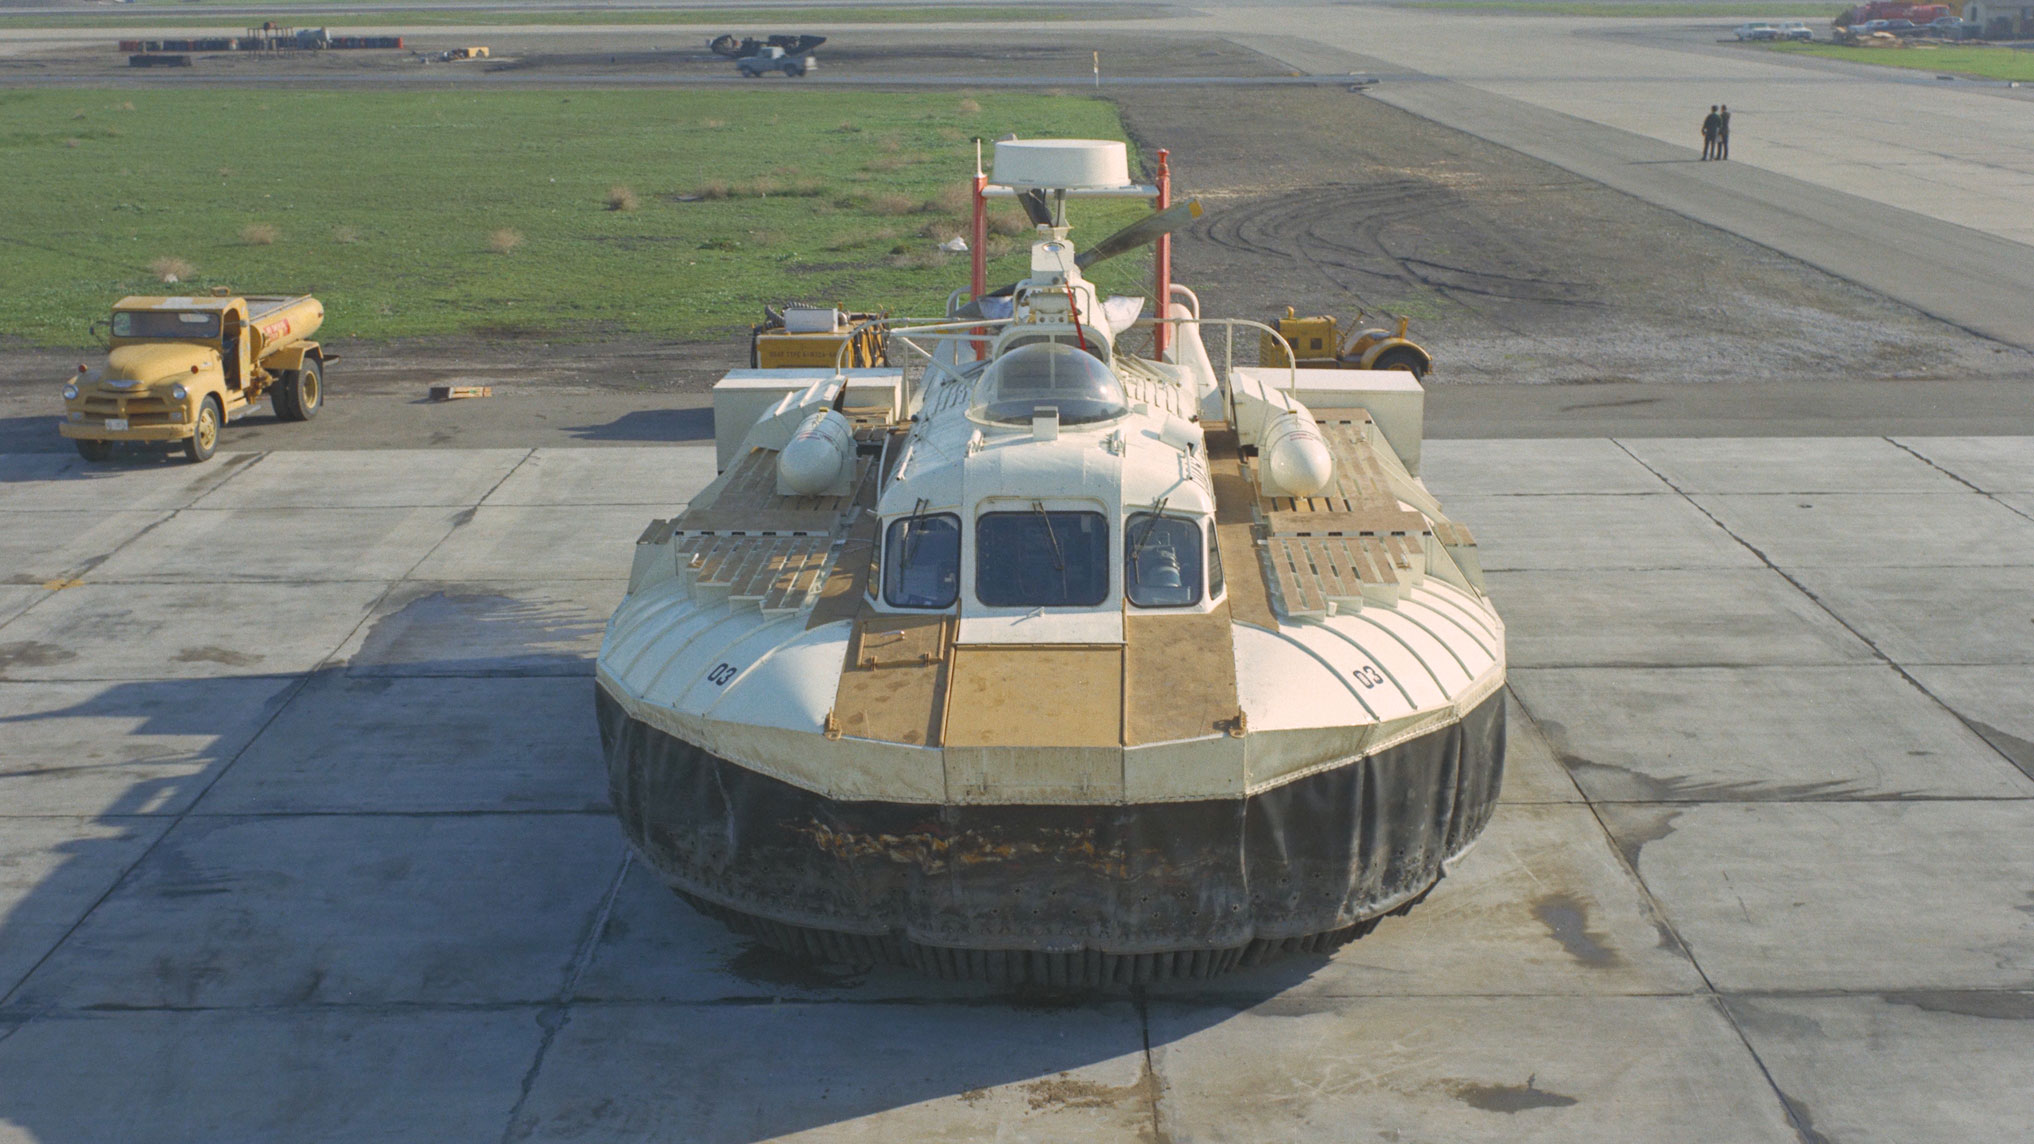 NASA hovercraft vehicle